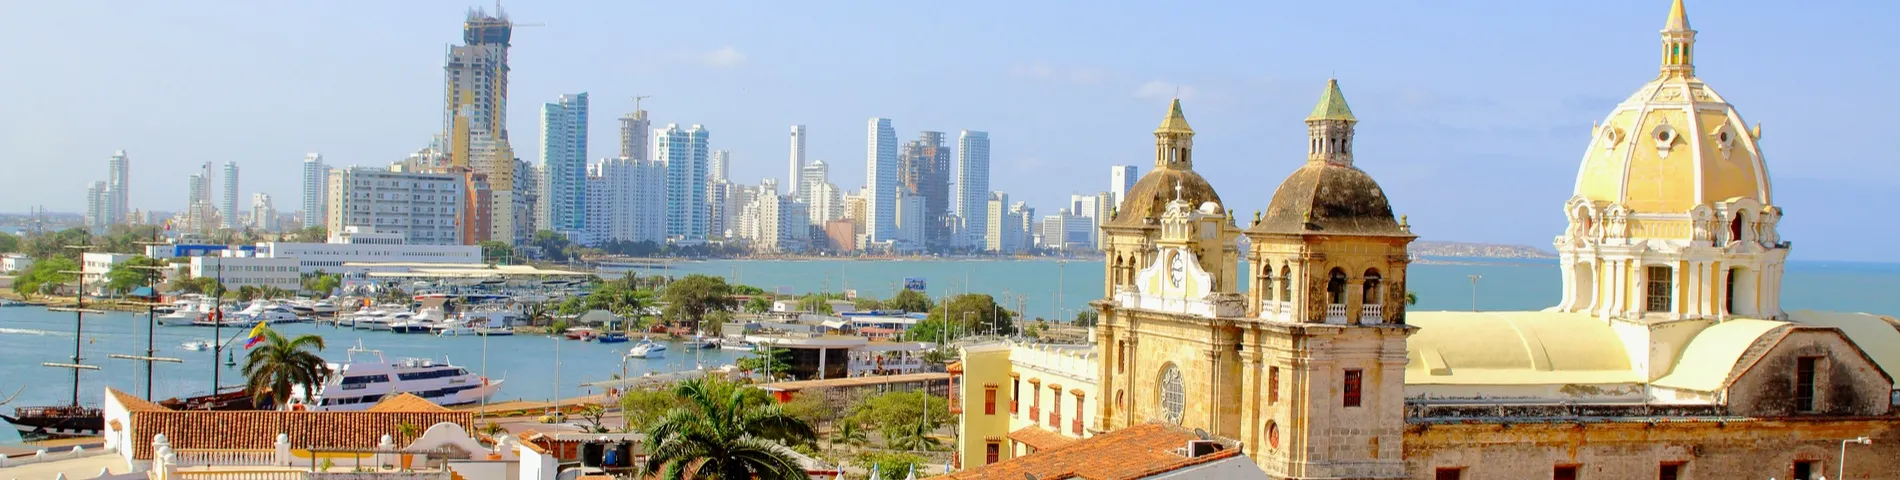 Cartagena - Standardkursus